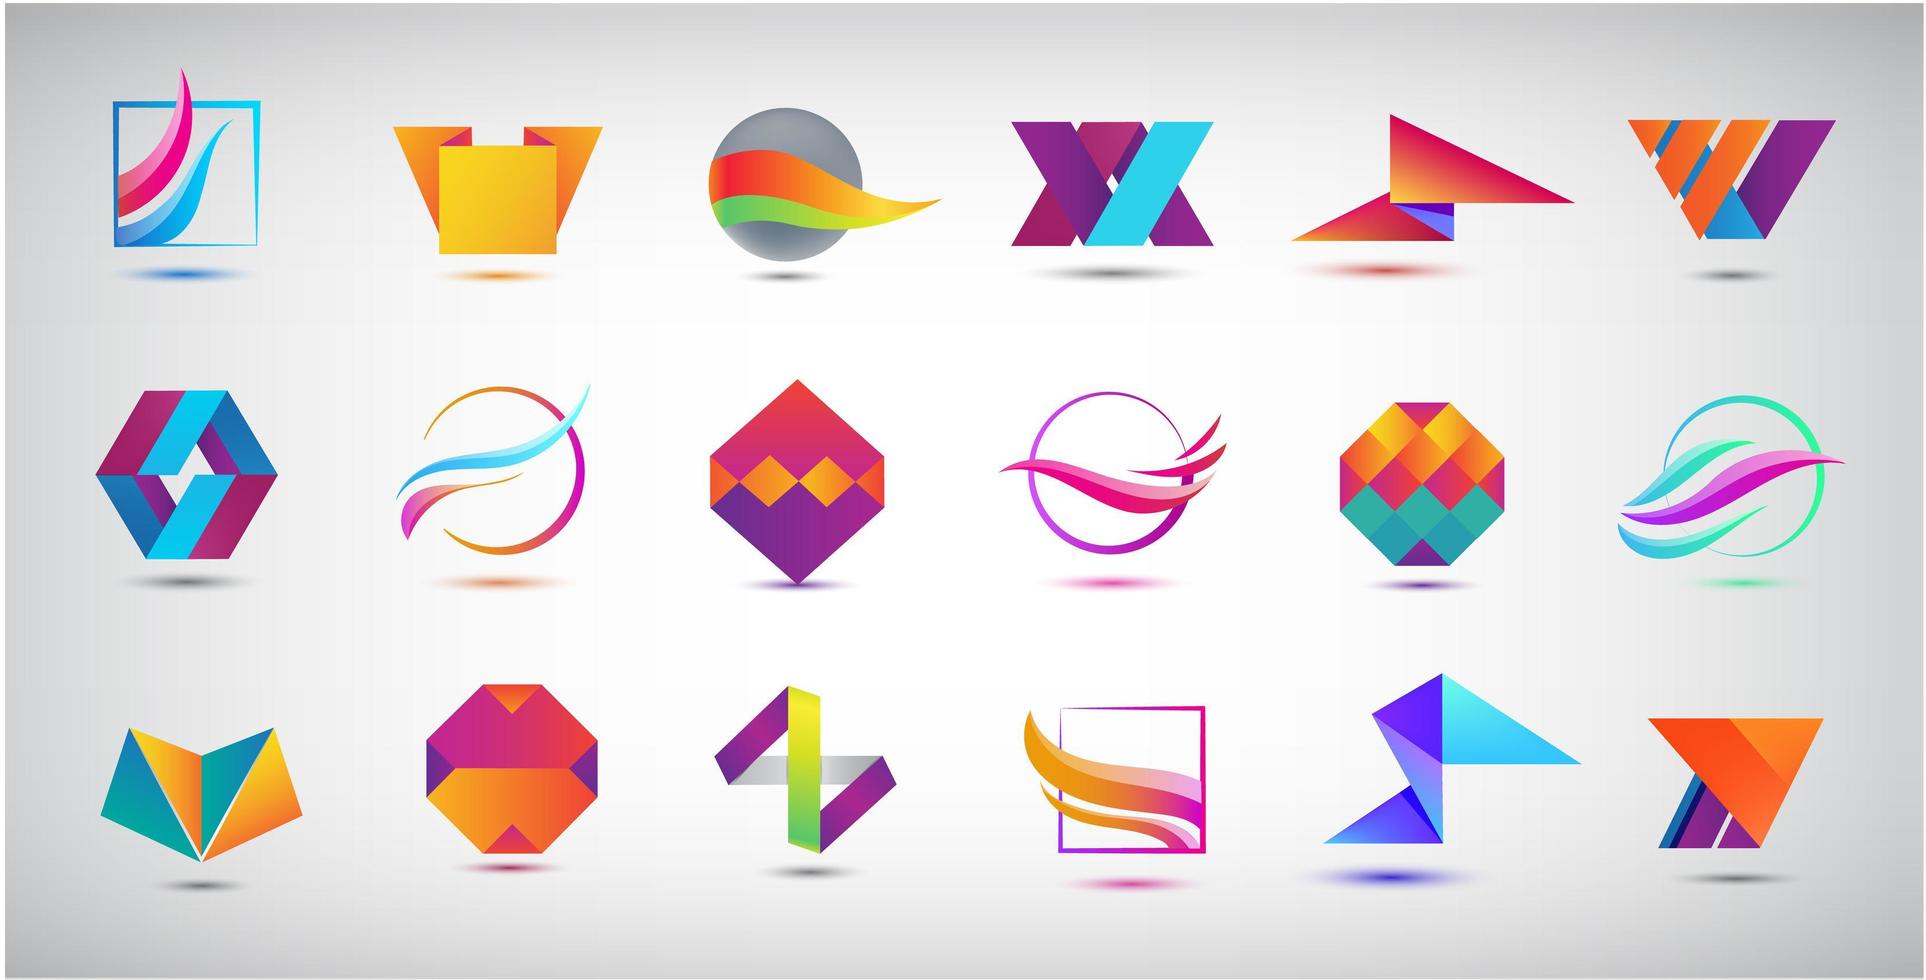 conjunto de vetores de logotipos abstratos da web, conjunto de ícones de negócios isolados. ilustração vetorial. logotipos geométricos, origami, ondulados em 3D